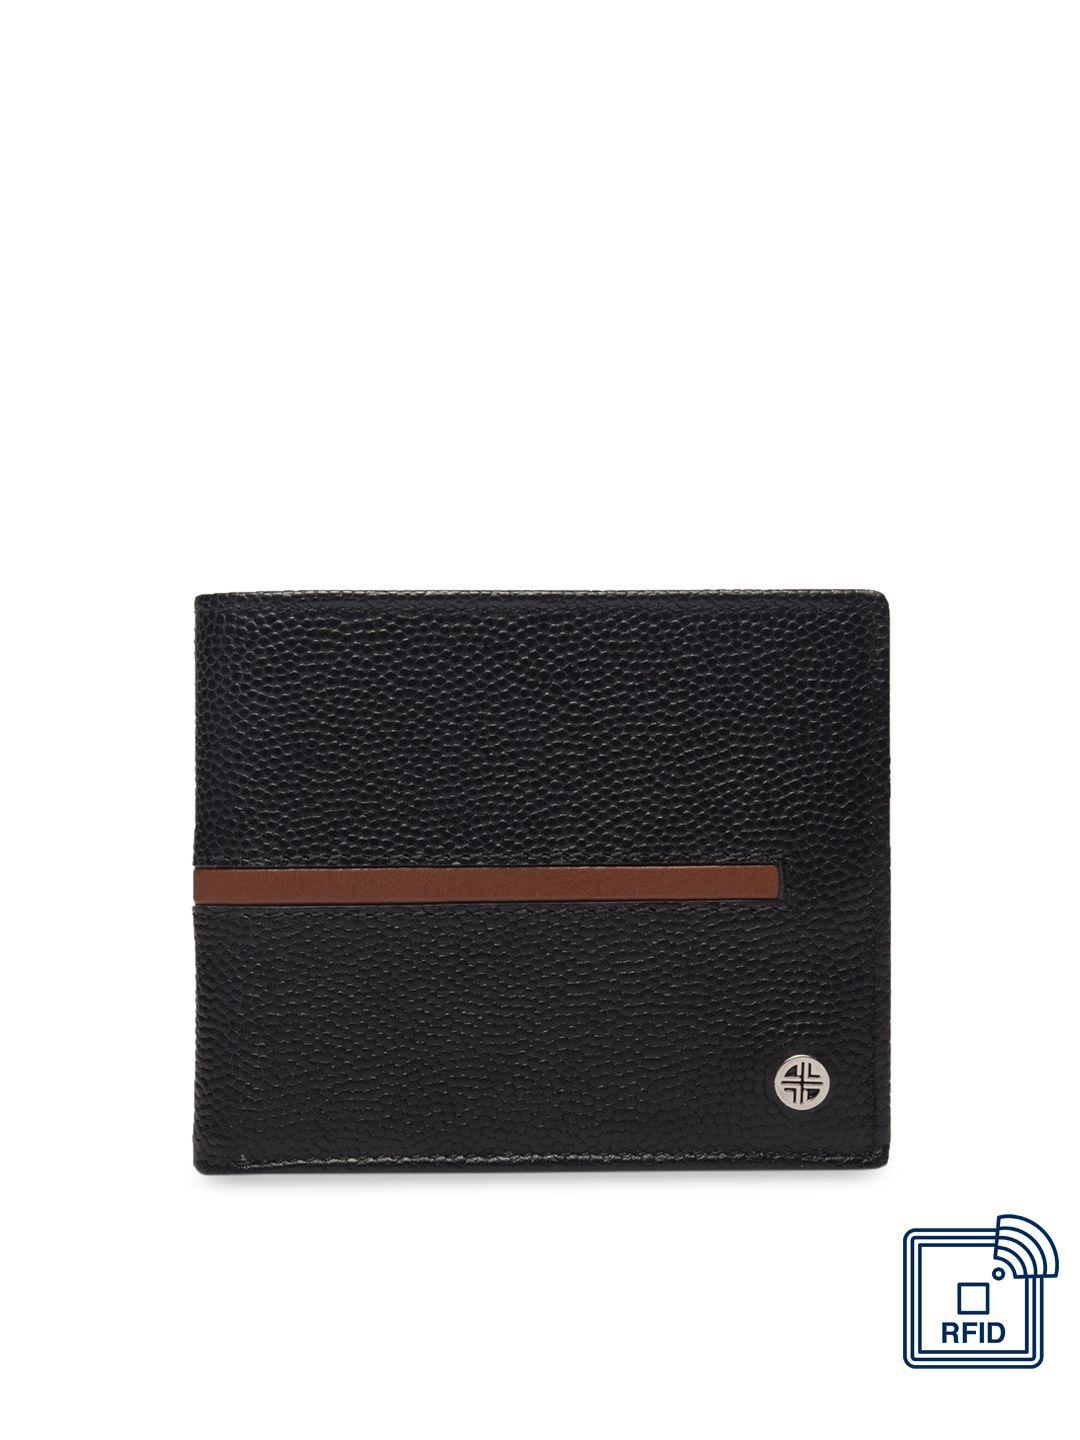 carlton london men black & maroon rfid leather two fold wallet